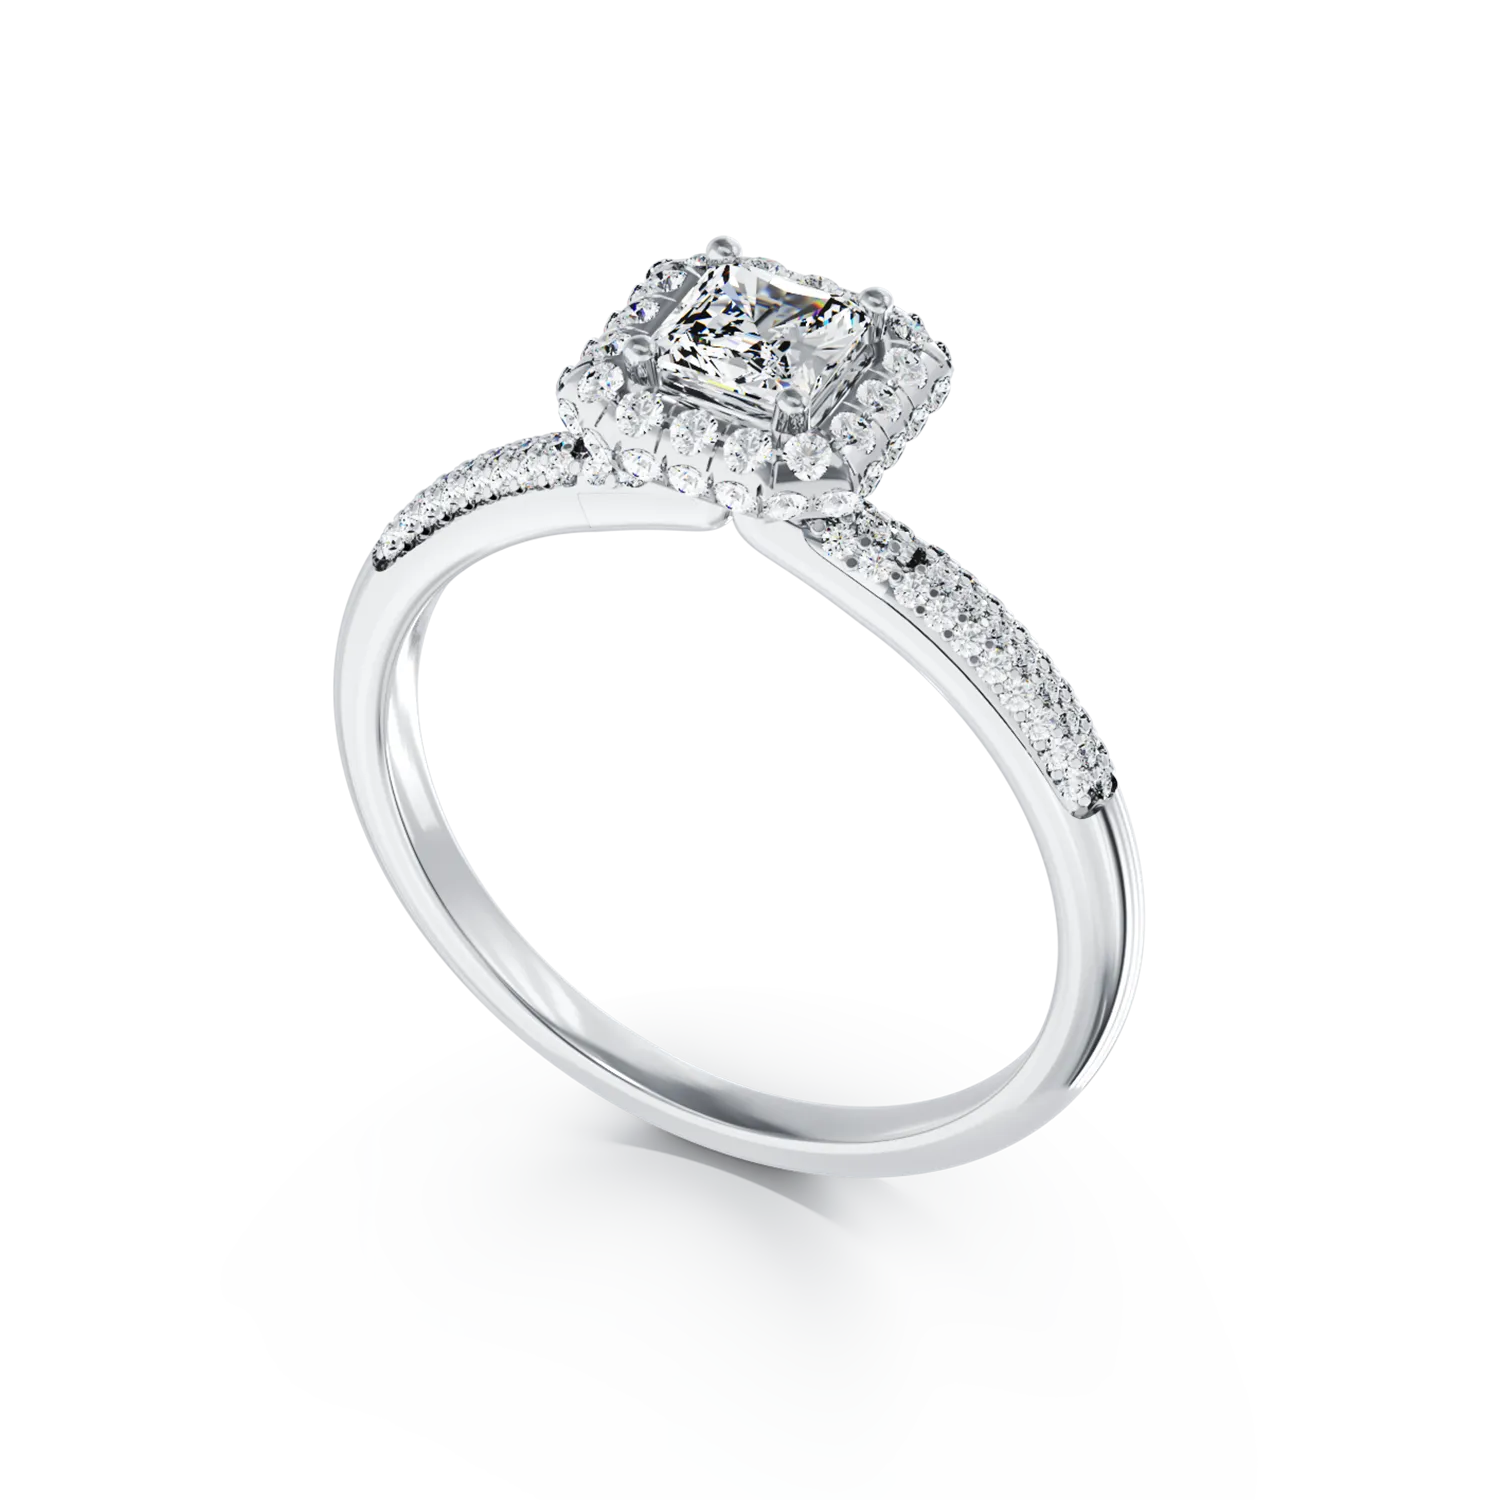 Eljegyzési gyűrű 18K-os fehér aranyból 0,2ct gyémánttal és 0,42ct gyémántokkal. Gramm: 3,28